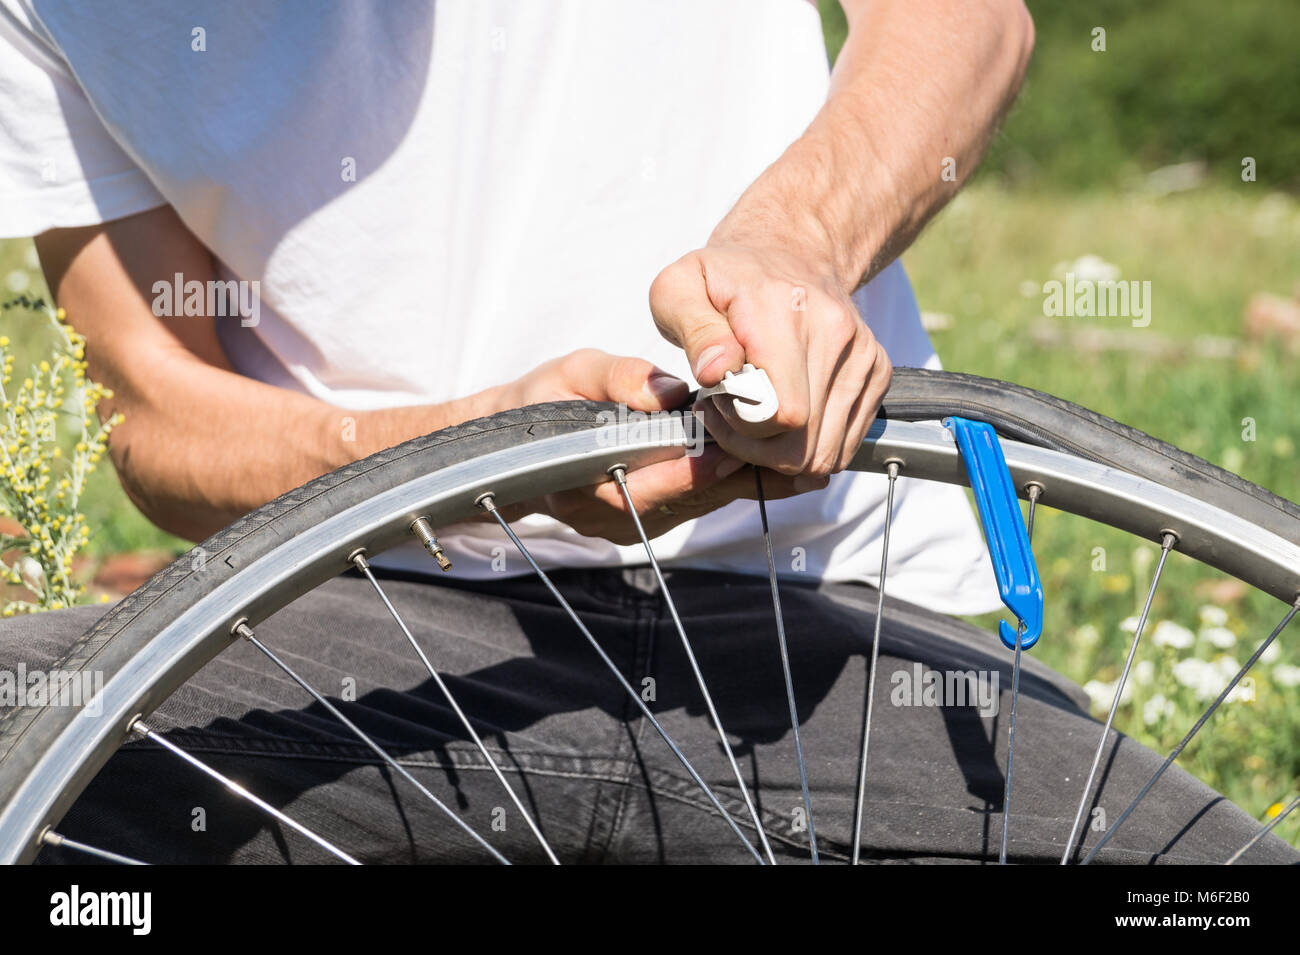 Close up image des personnes mains en utilisant les leviers des pneus pour remplacer le tube intérieur de roue de bicyclette Banque D'Images